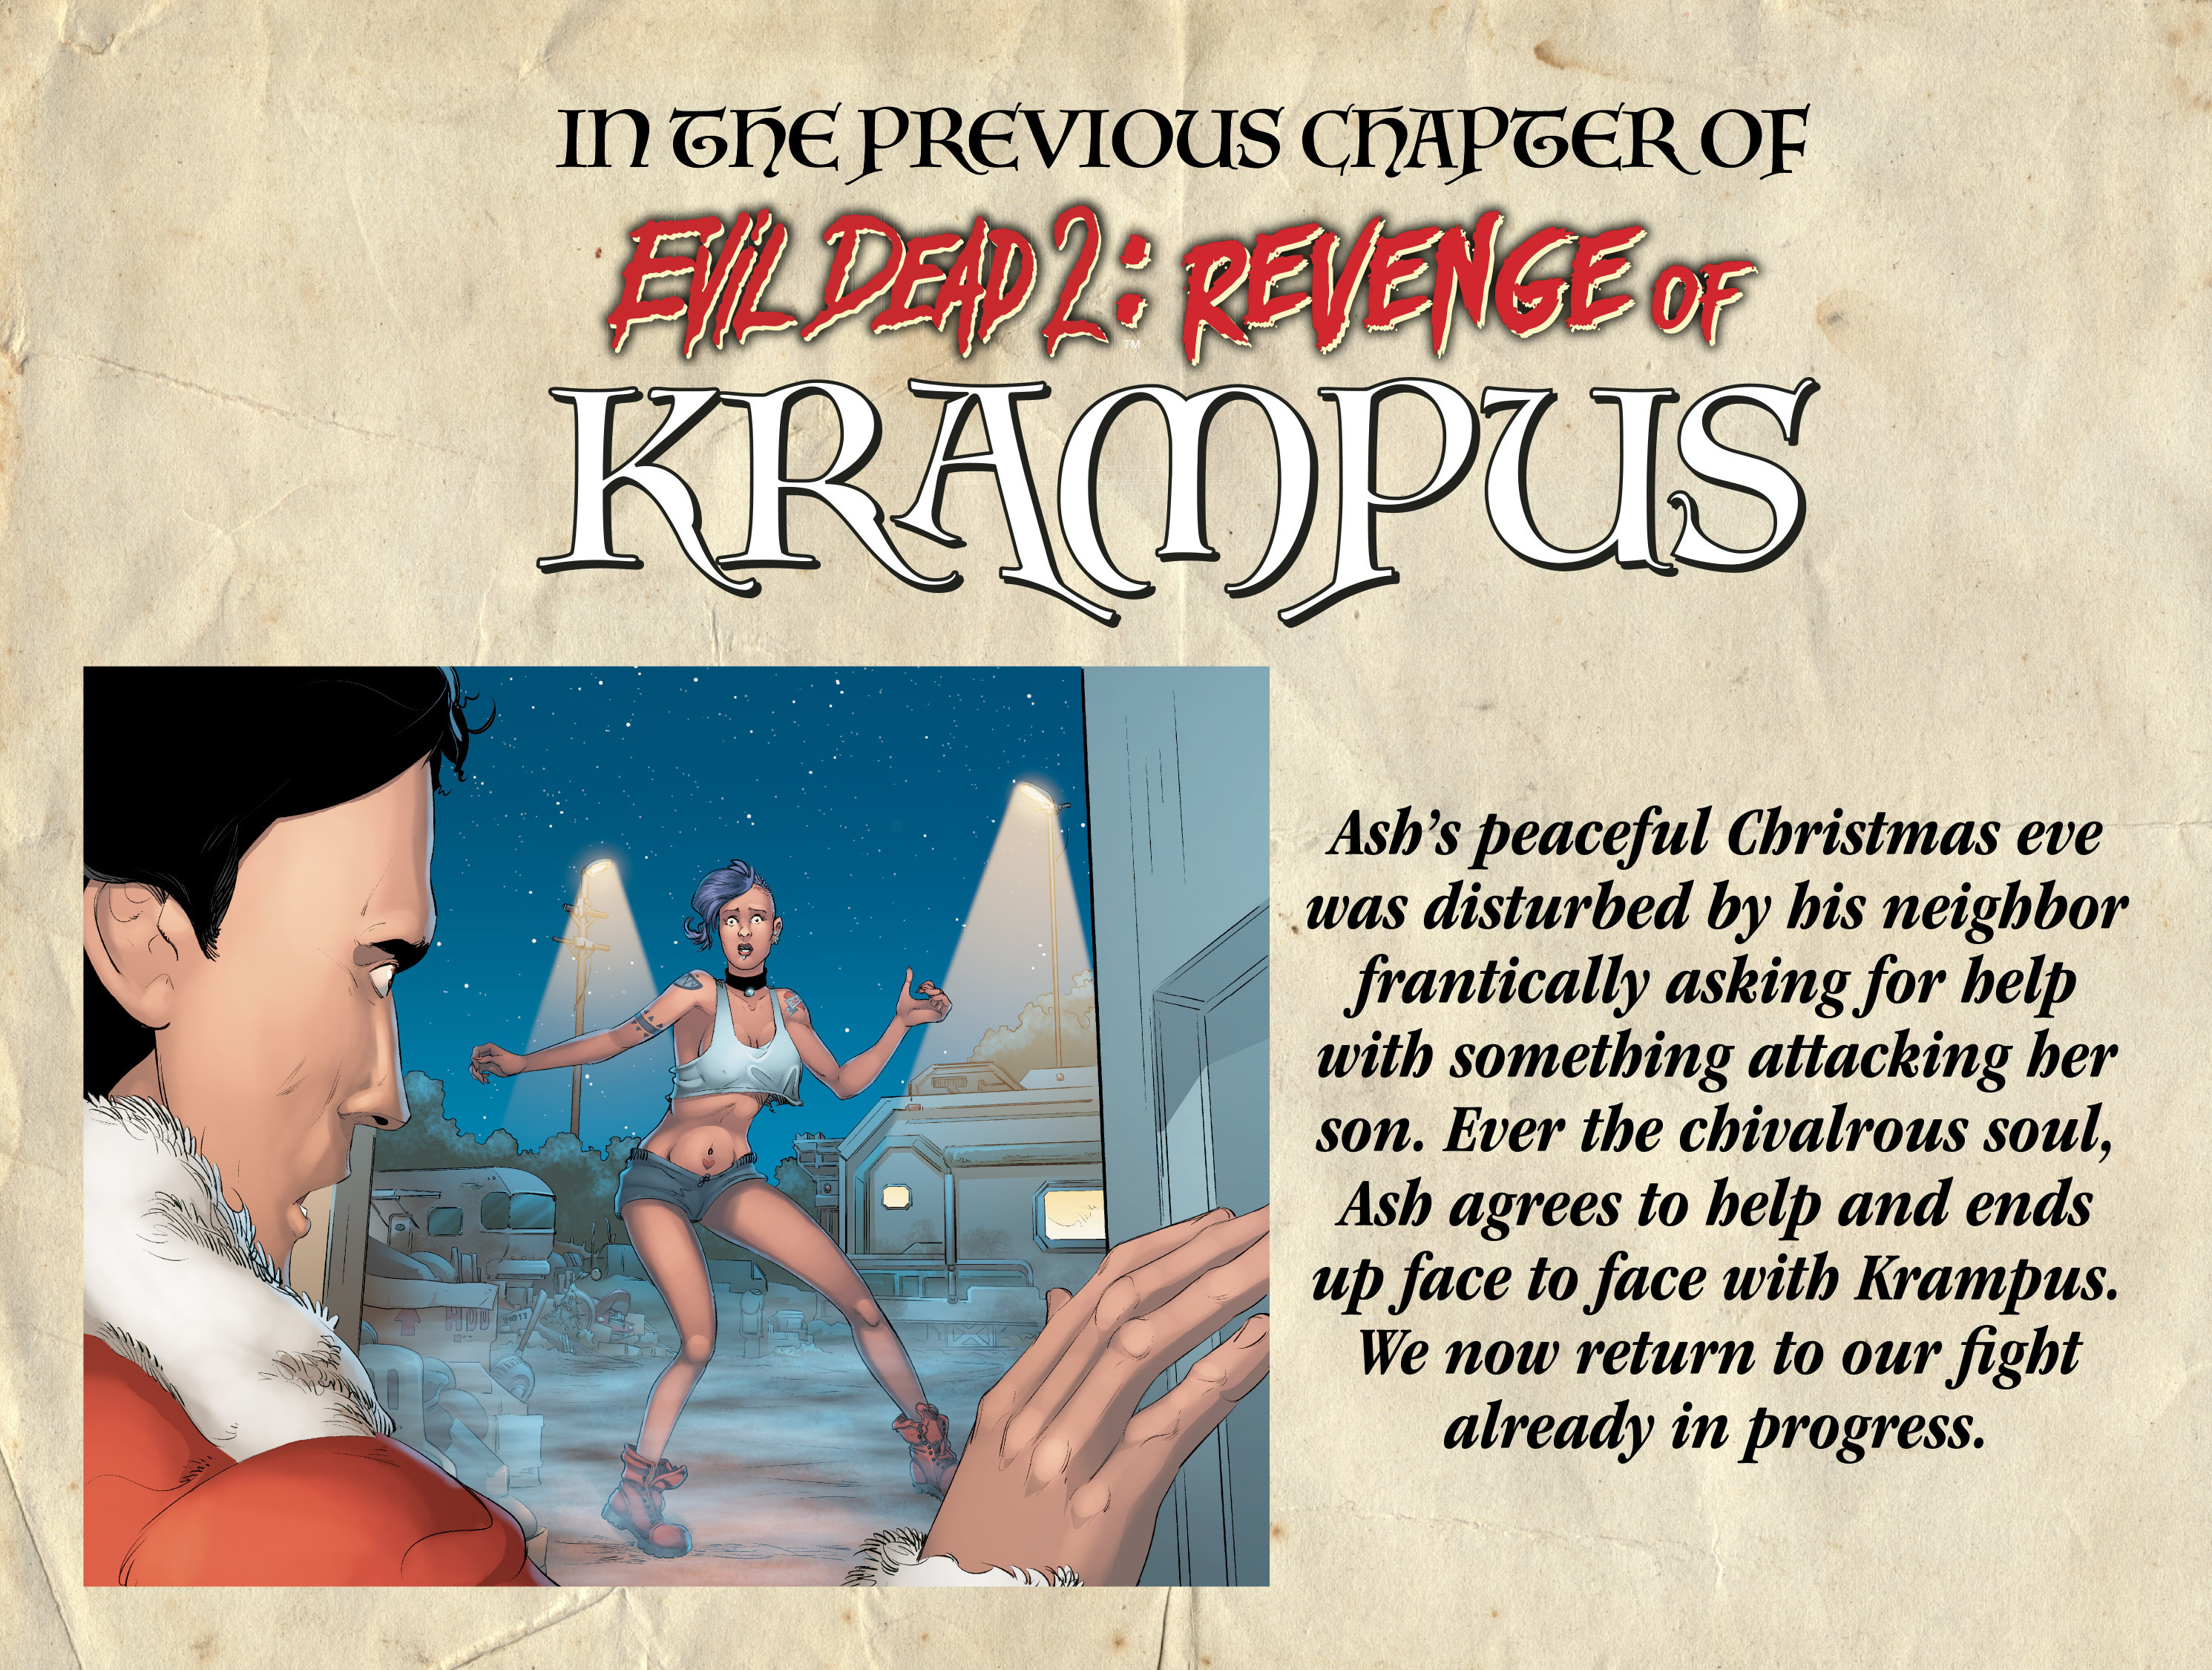 Read online Evil Dead 2: Revenge of Krampus comic -  Issue #2 - 3